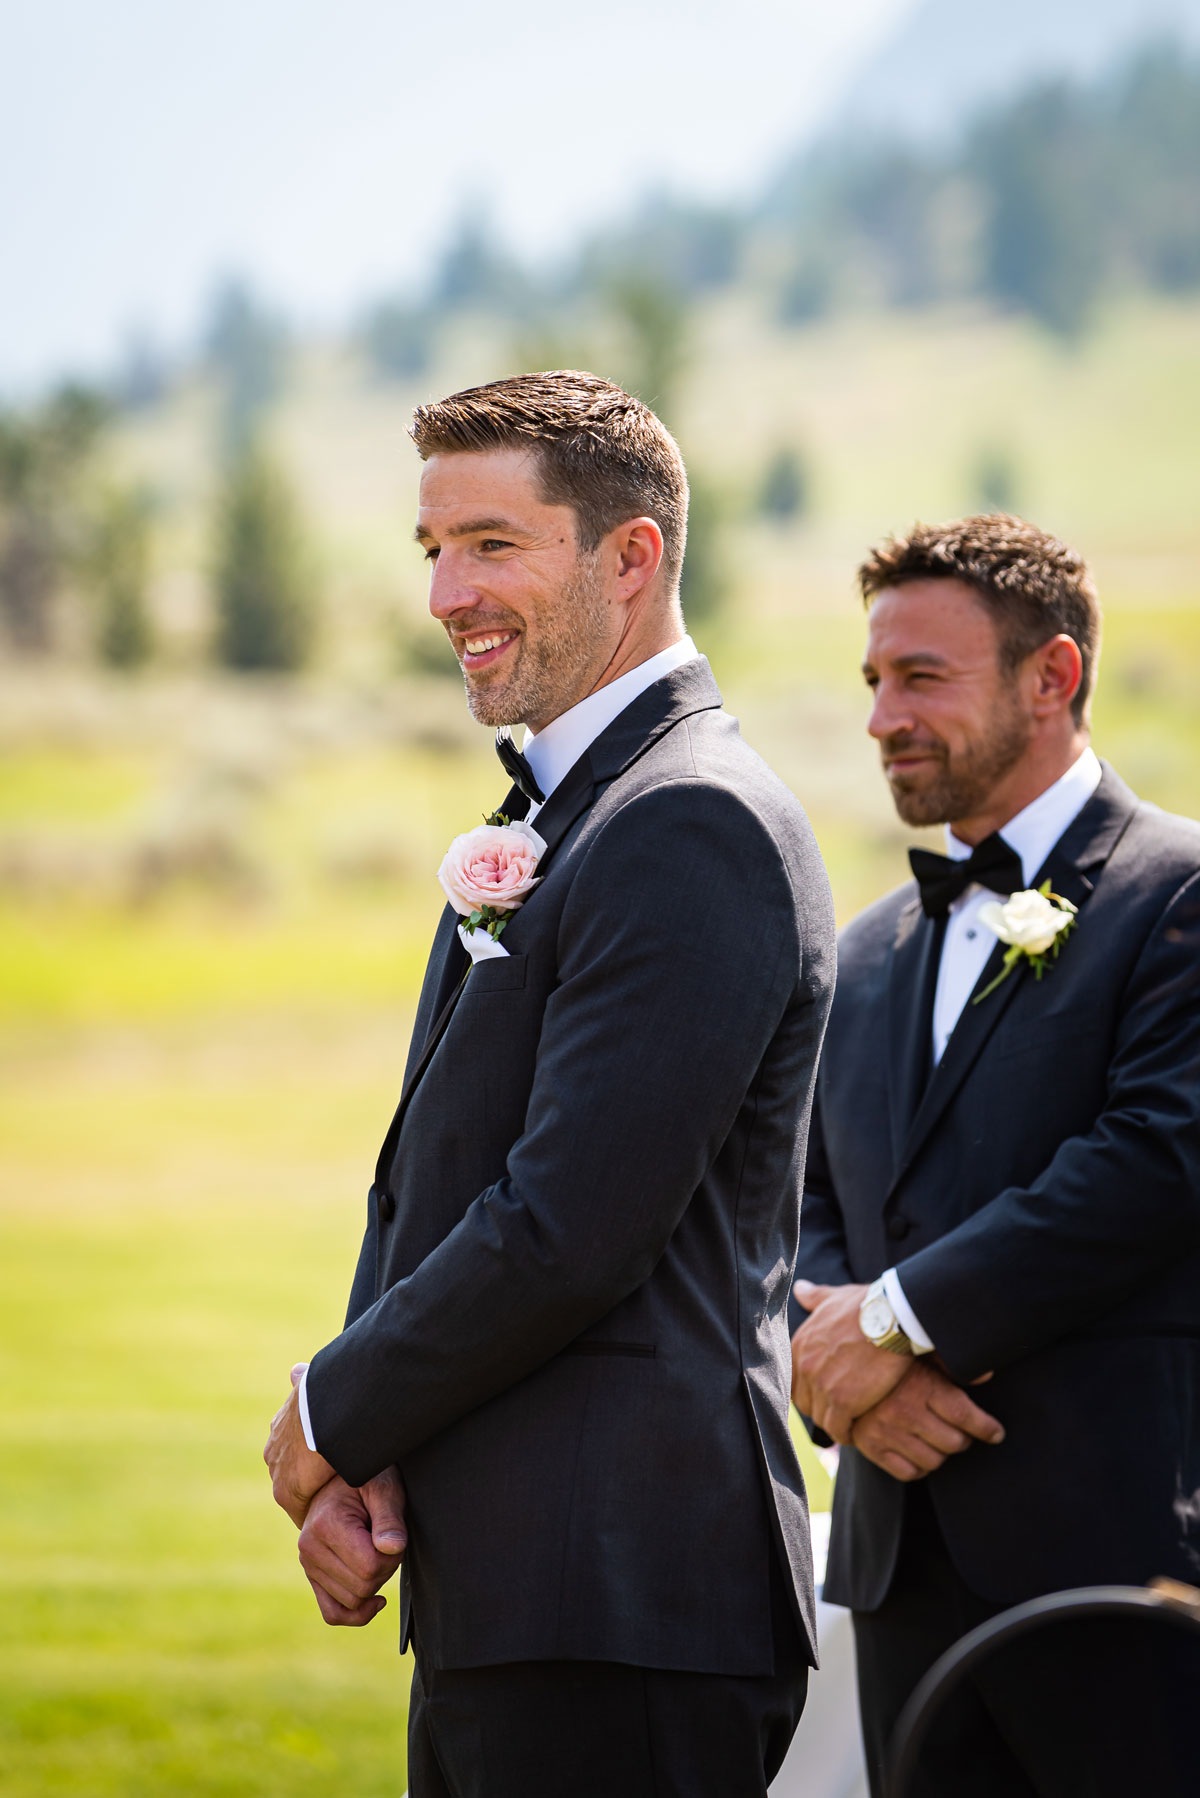 happy groom and best man wedding photography billings montana vande studios